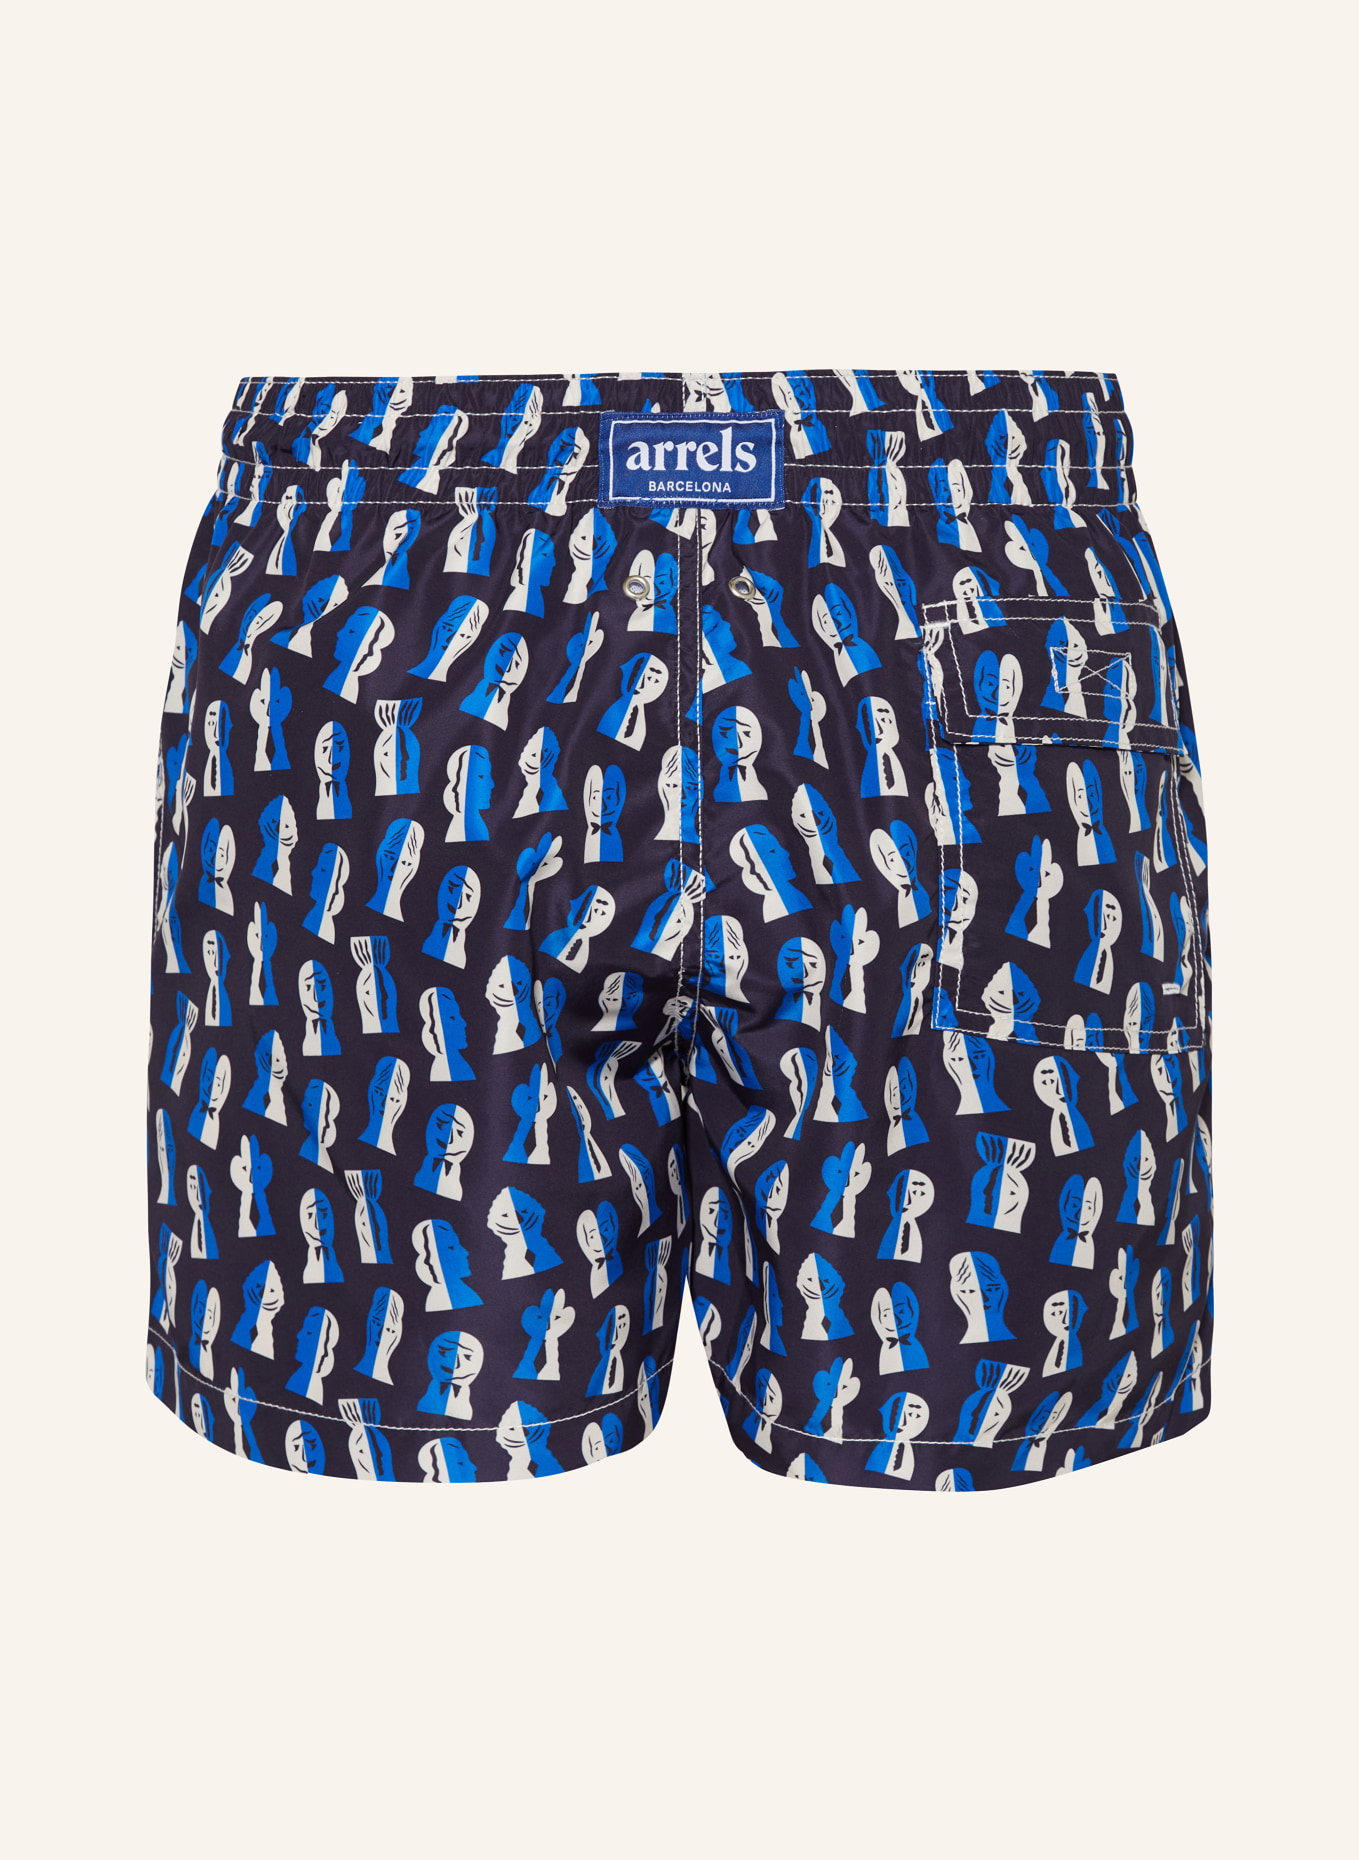 arrels BARCELONA Swim shorts NAVY PAPIER DÉCOUPÉ × SEVERIN MILLET, Color: BLUE/ DARK BLUE/ WHITE (Image 2)